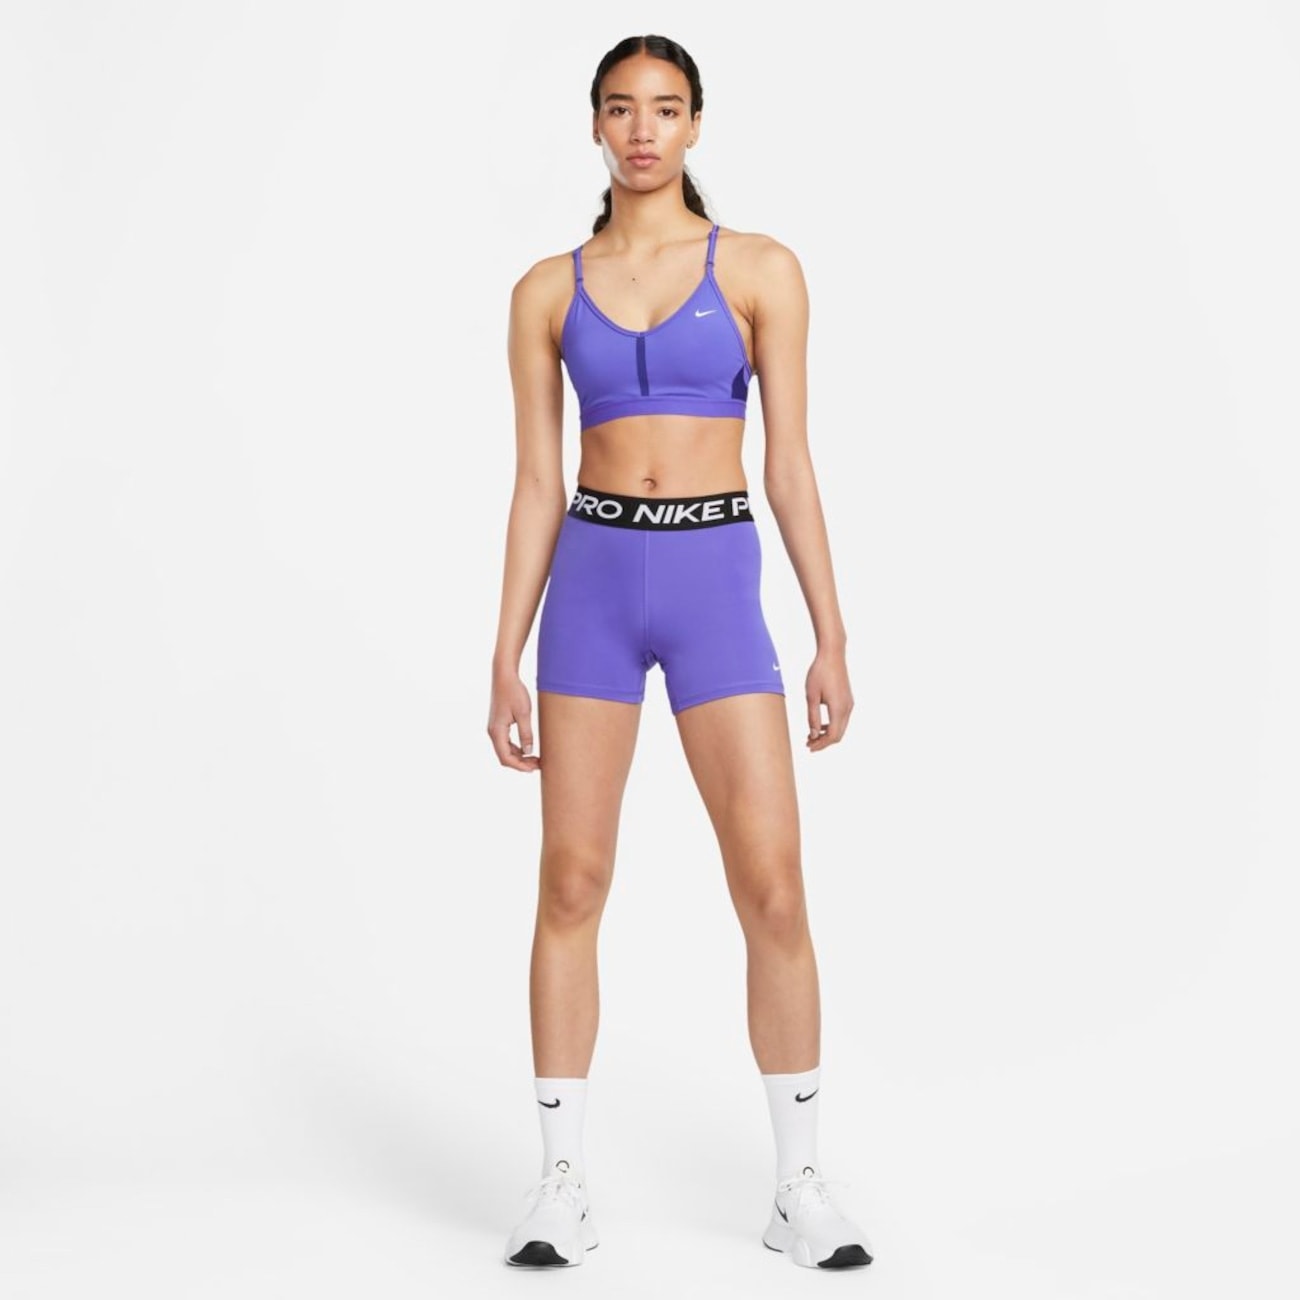 Shorts Nike Pro 365 Feminino - Raiana Shop